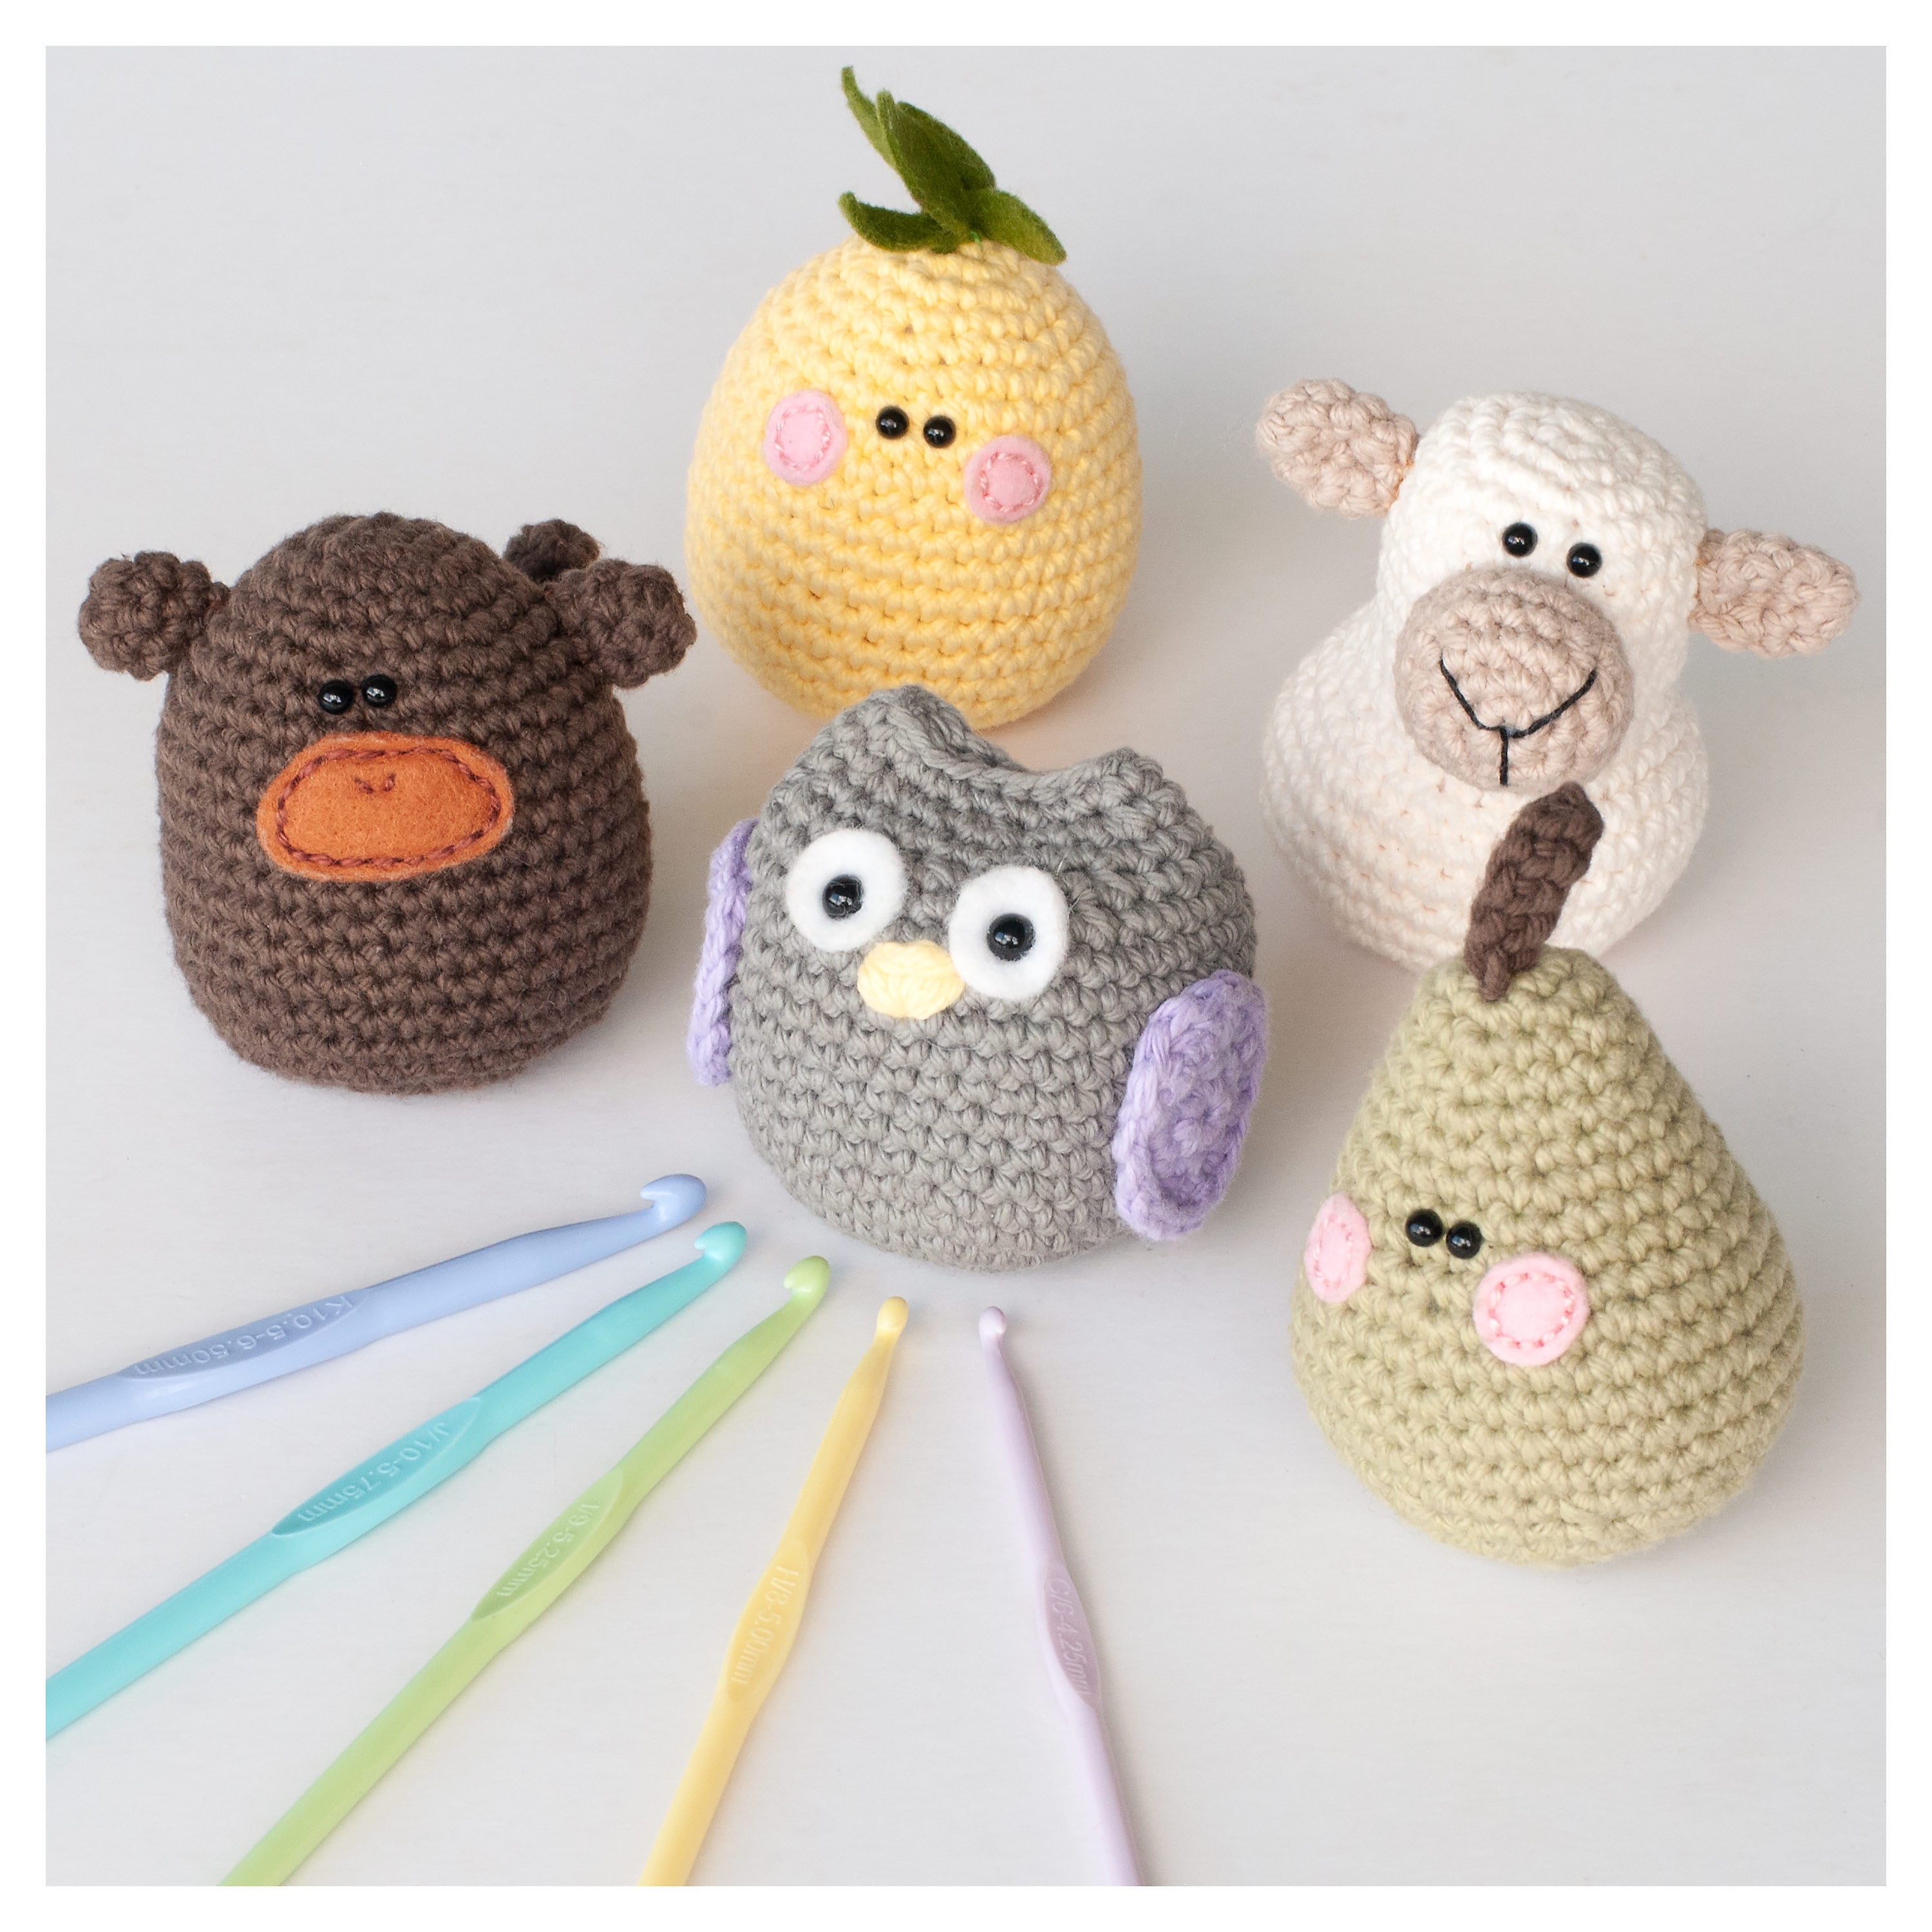 Boye 6 Crochet Hook - 070659777585